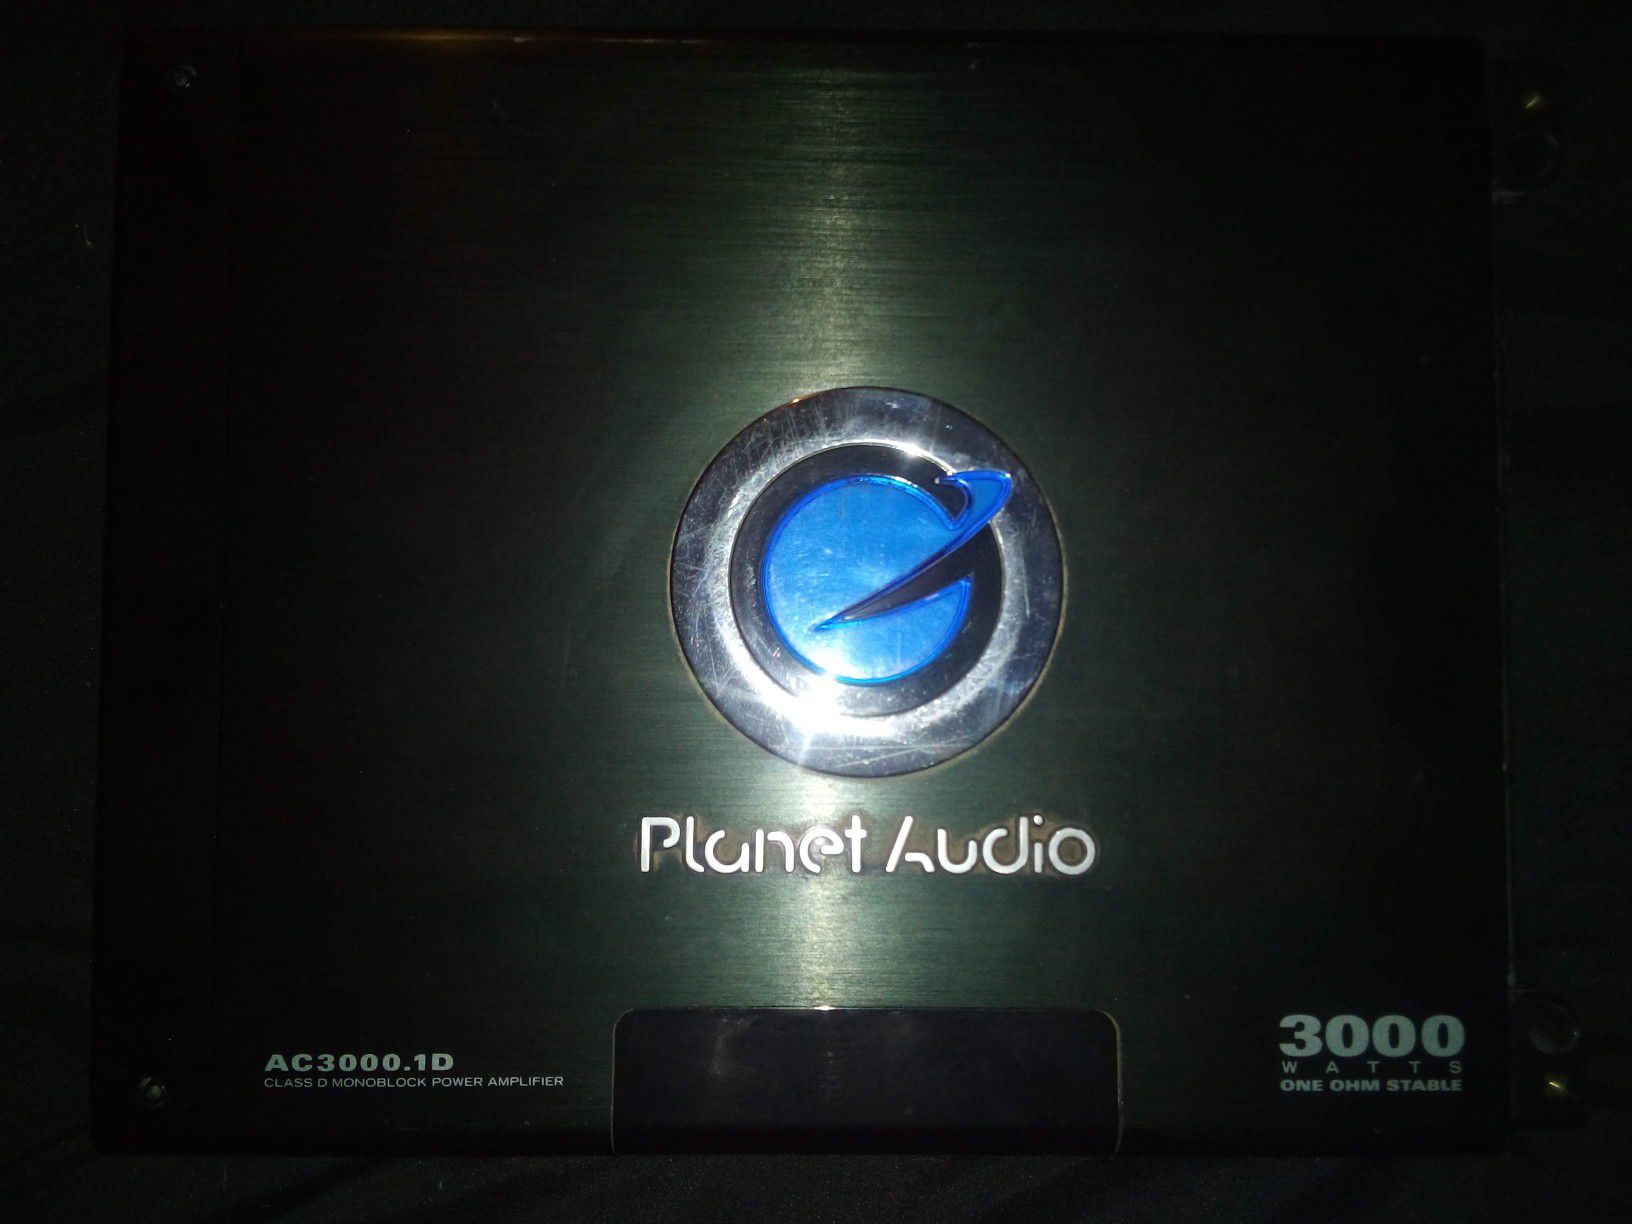 Planet audio amp